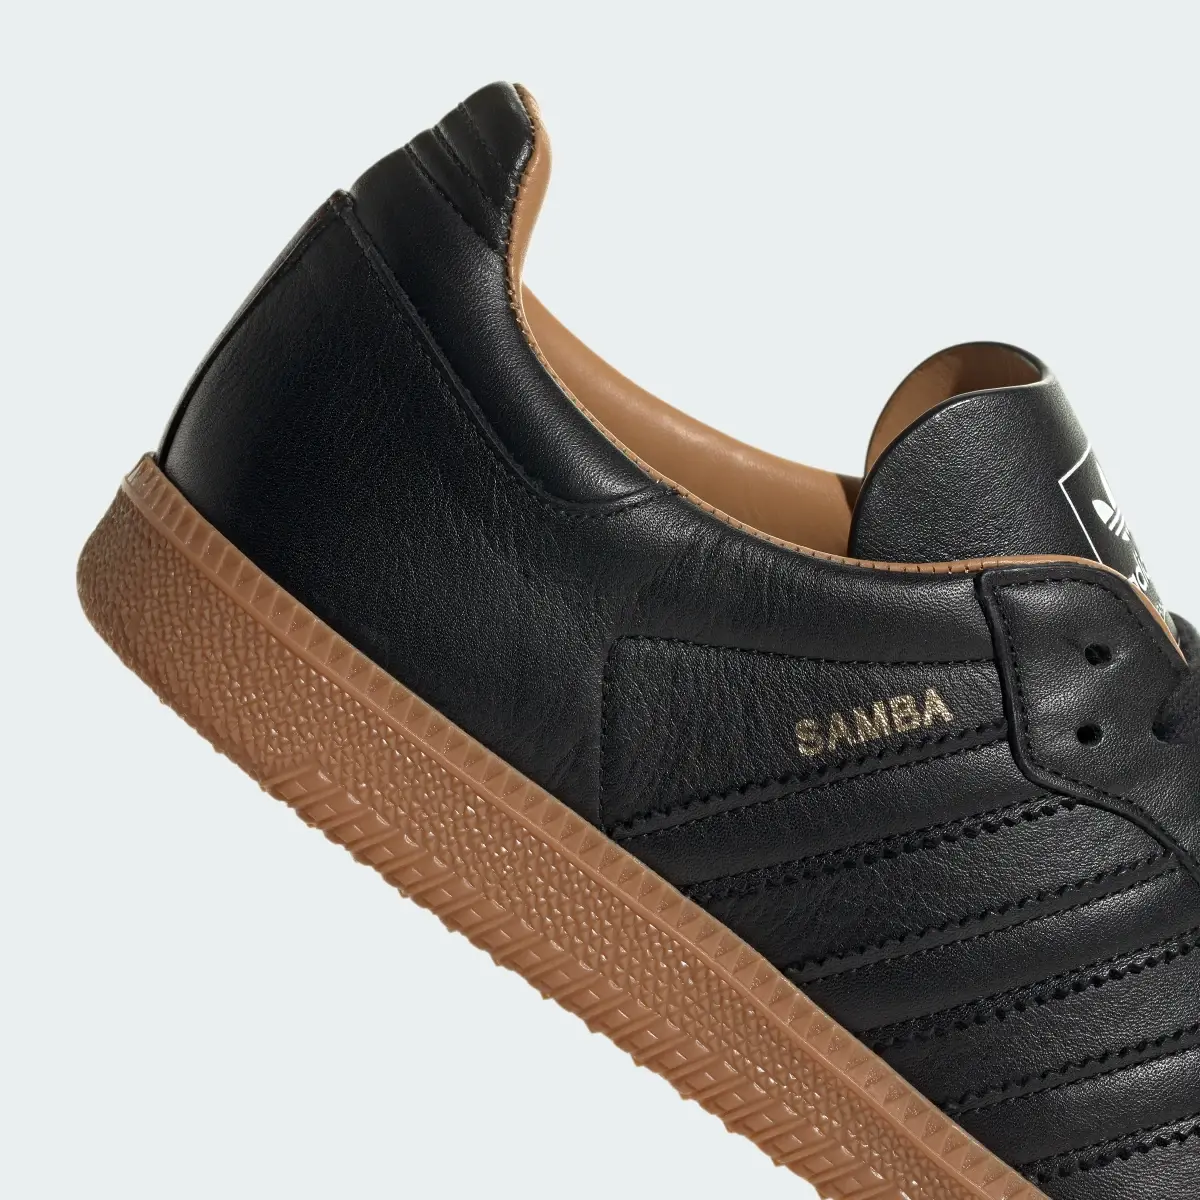 Adidas Samba OG Made In Italy Shoes. 3